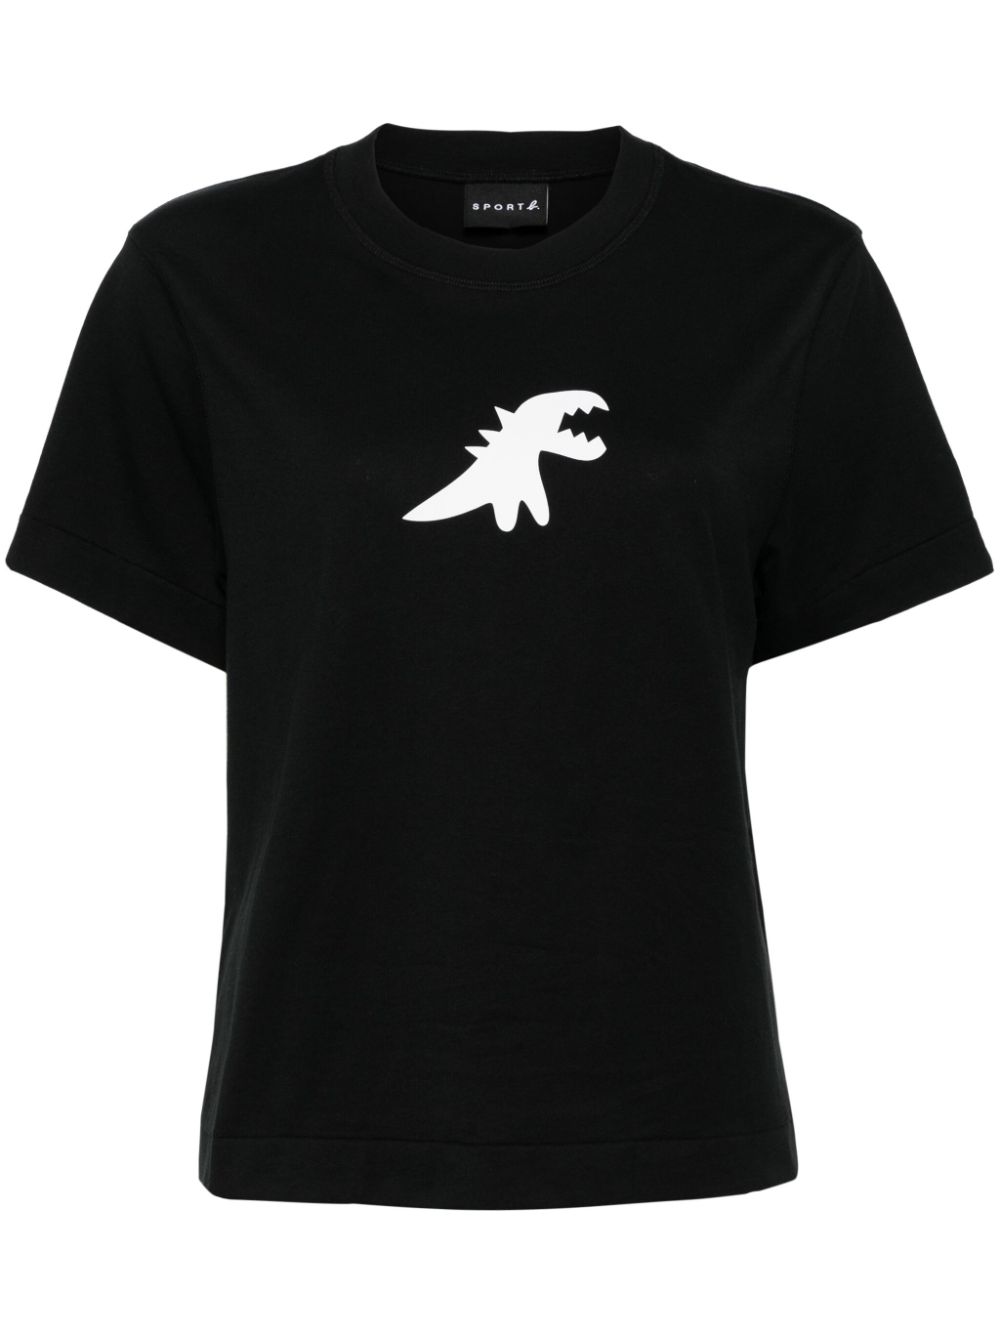 Sport B. By Agnès B. Dinosaur Print T-shirt In Black